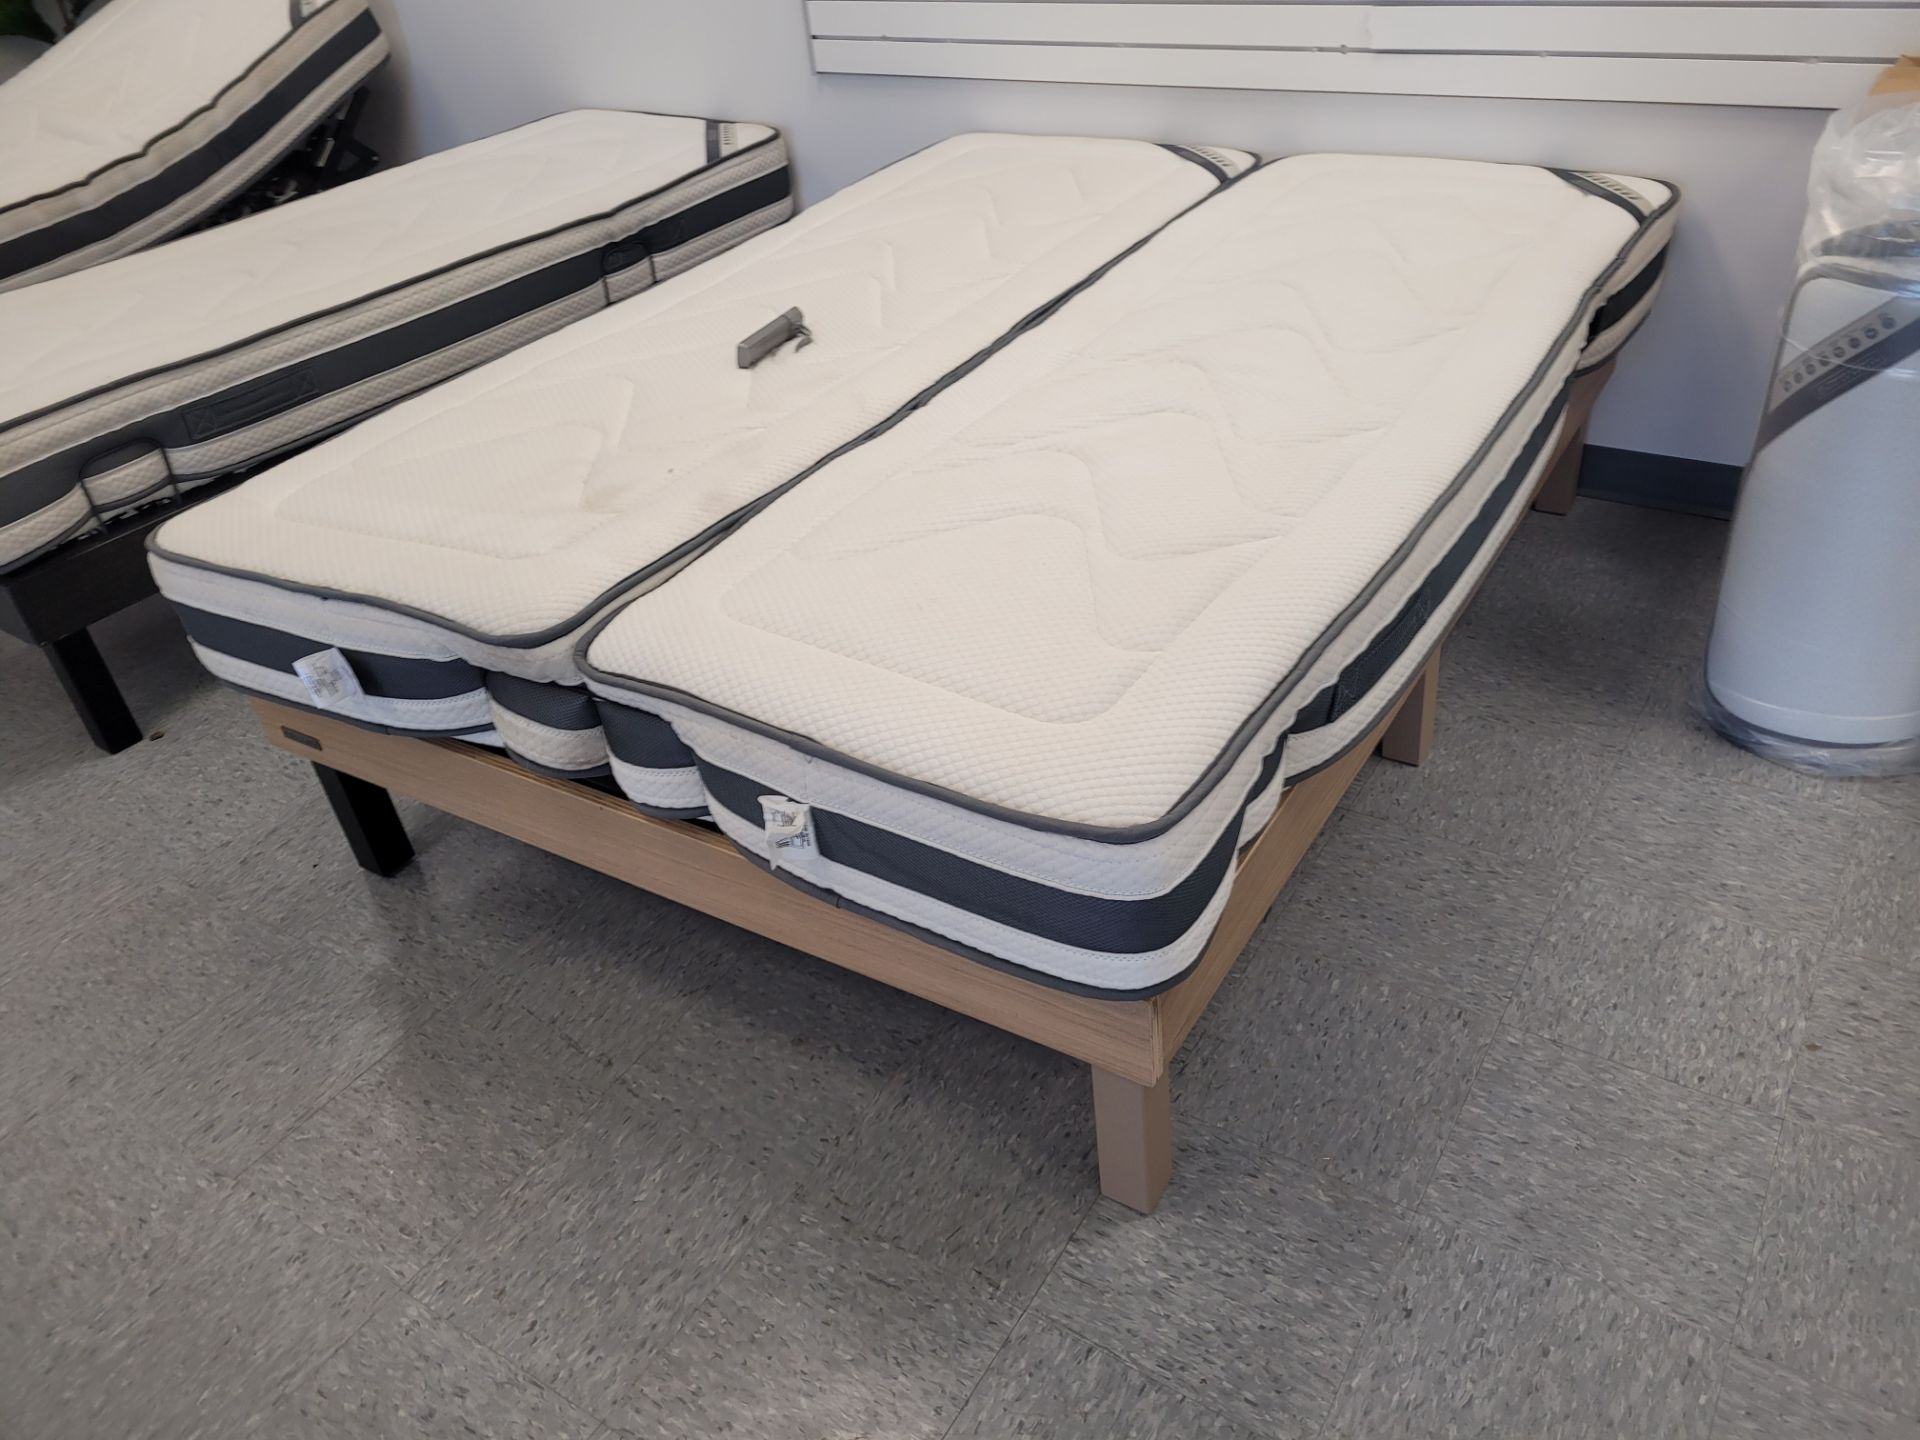 NATURE & PUR adjustable electric bed mod. COMFORT LUXURY V.2 size DOUBLE 53" x 75" Lit électrique aj - Image 4 of 5